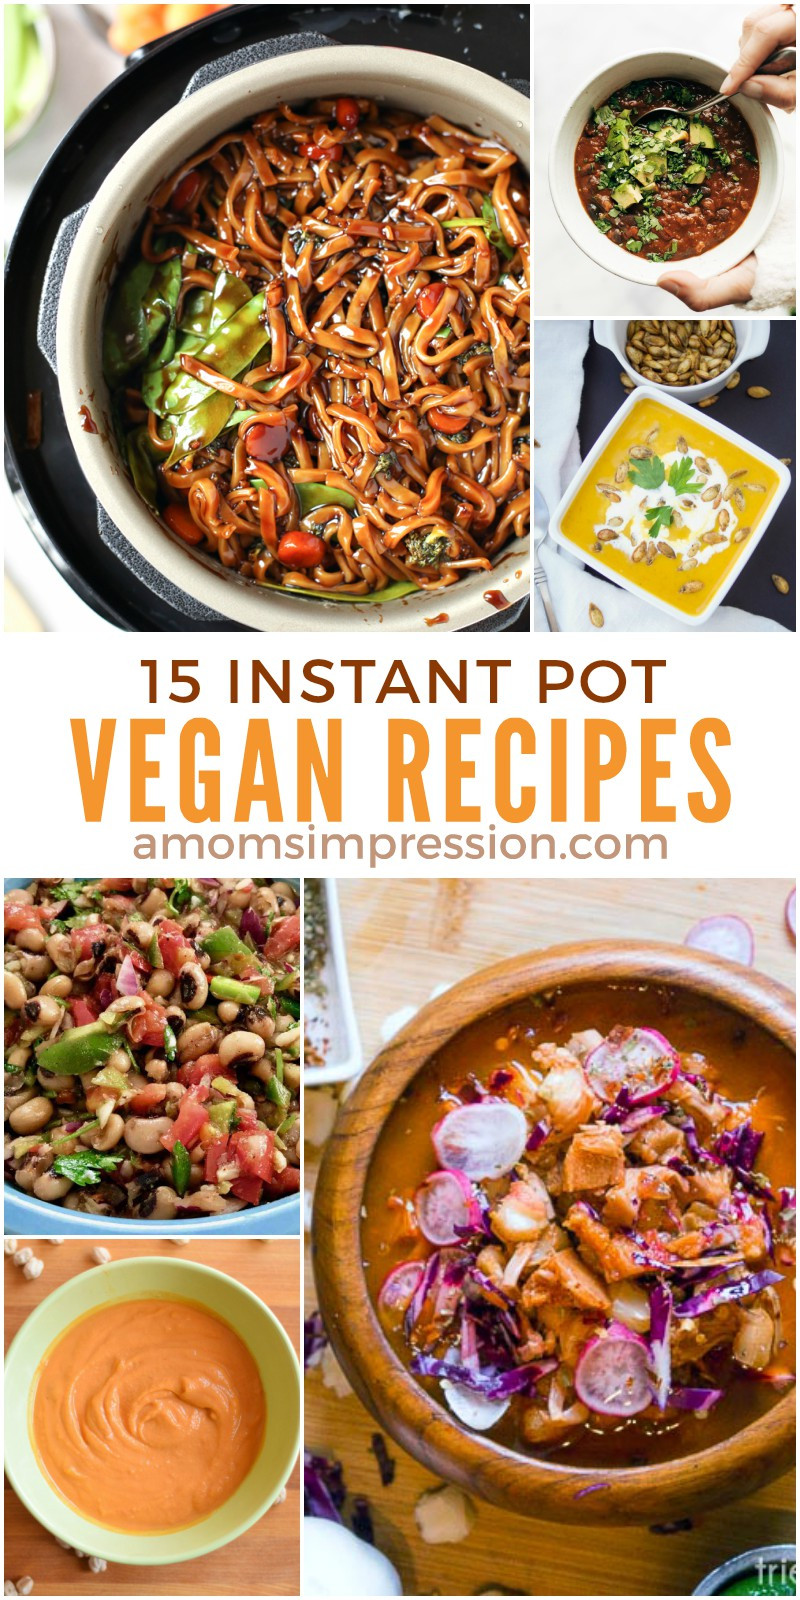 Healthy Easy Instant Pot Recipes
 15 Healthy and Delicious Vegan Instant Pot Recipes